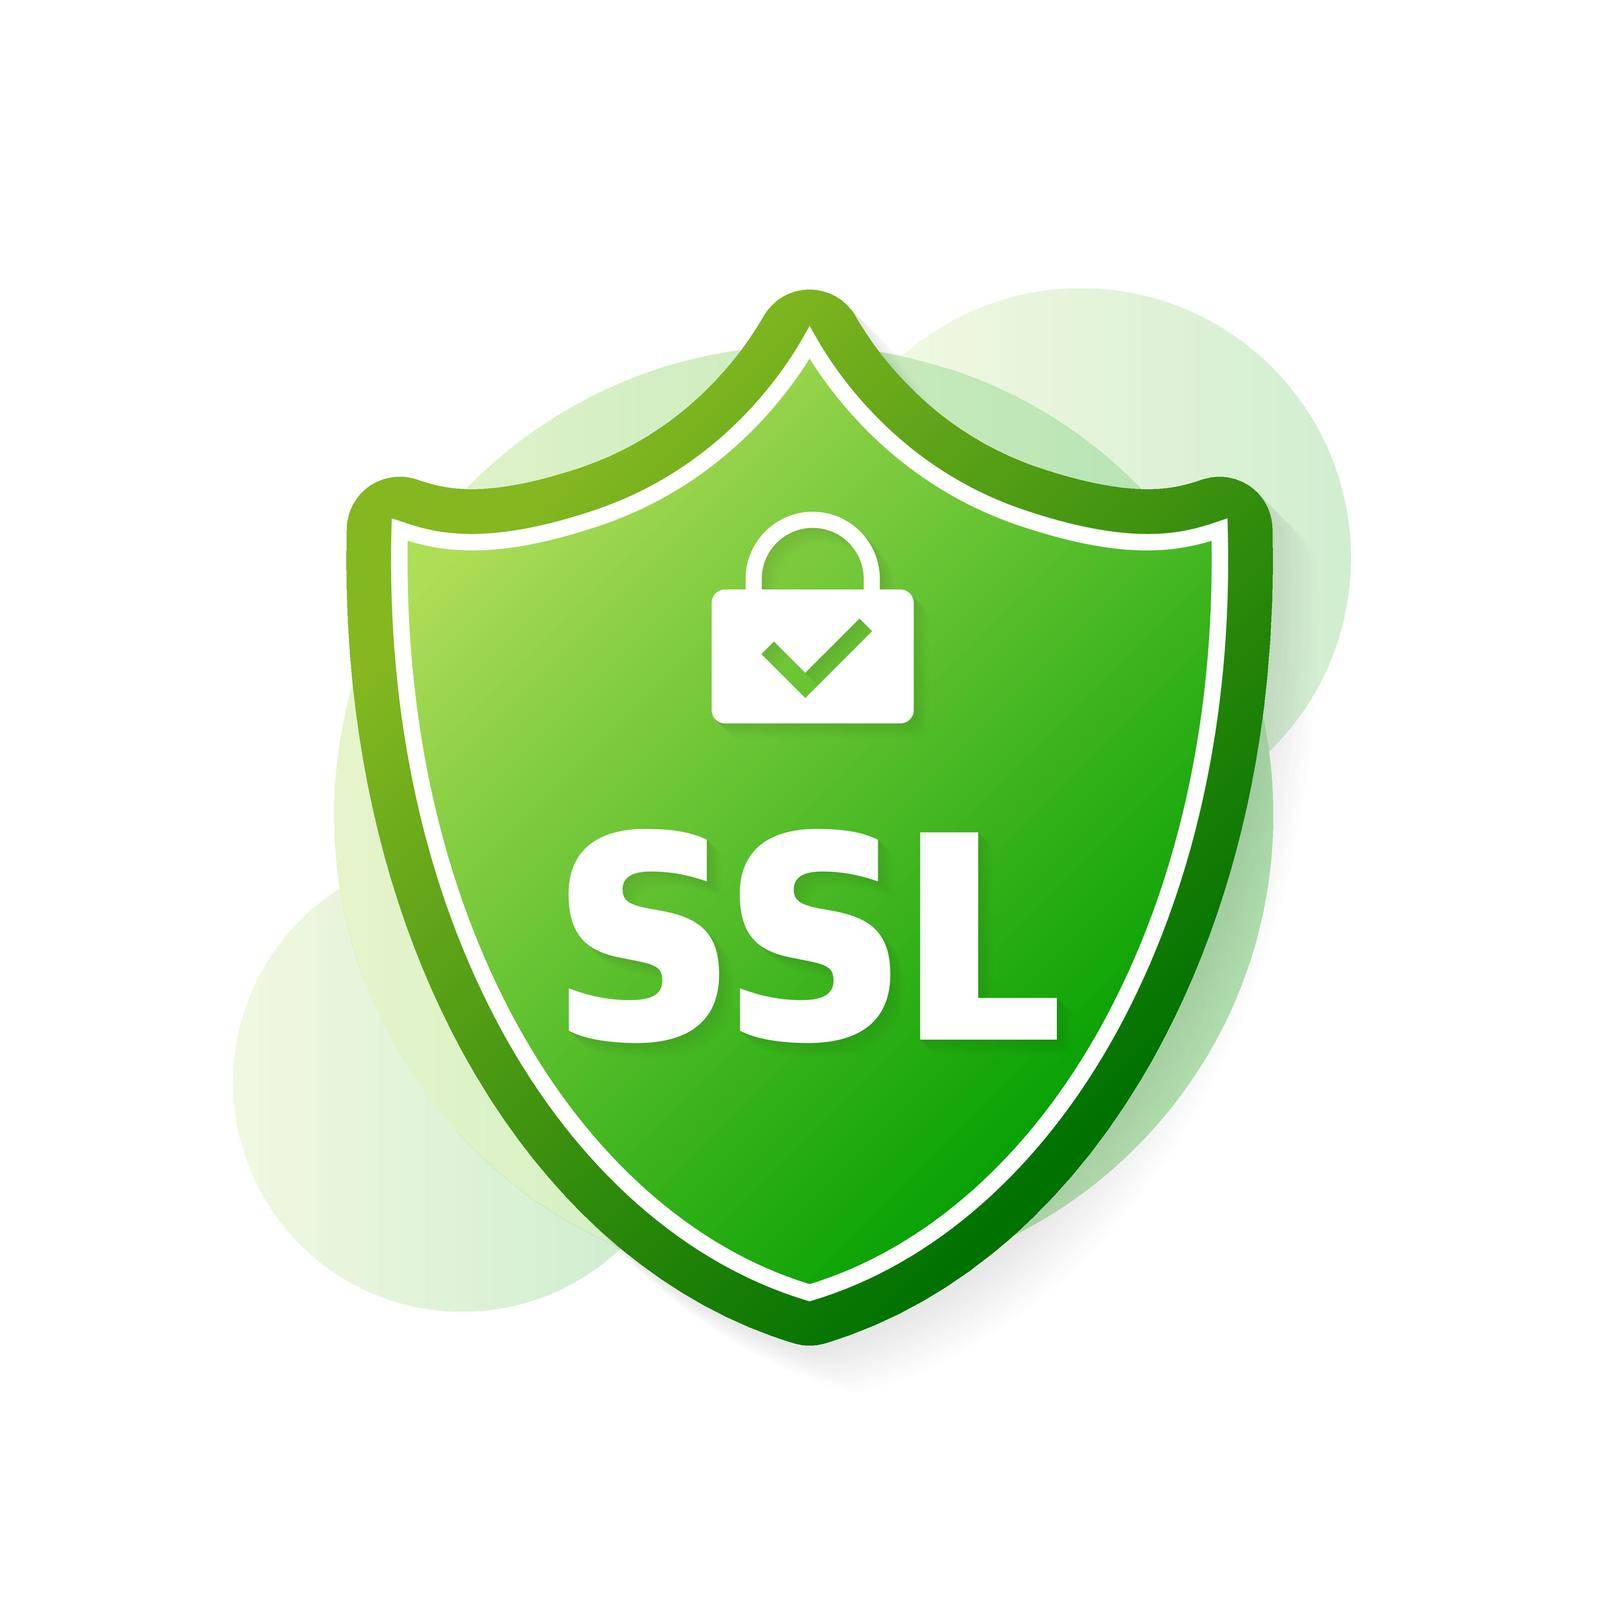 SSL encryption label. Secure banner. Vector illustration.